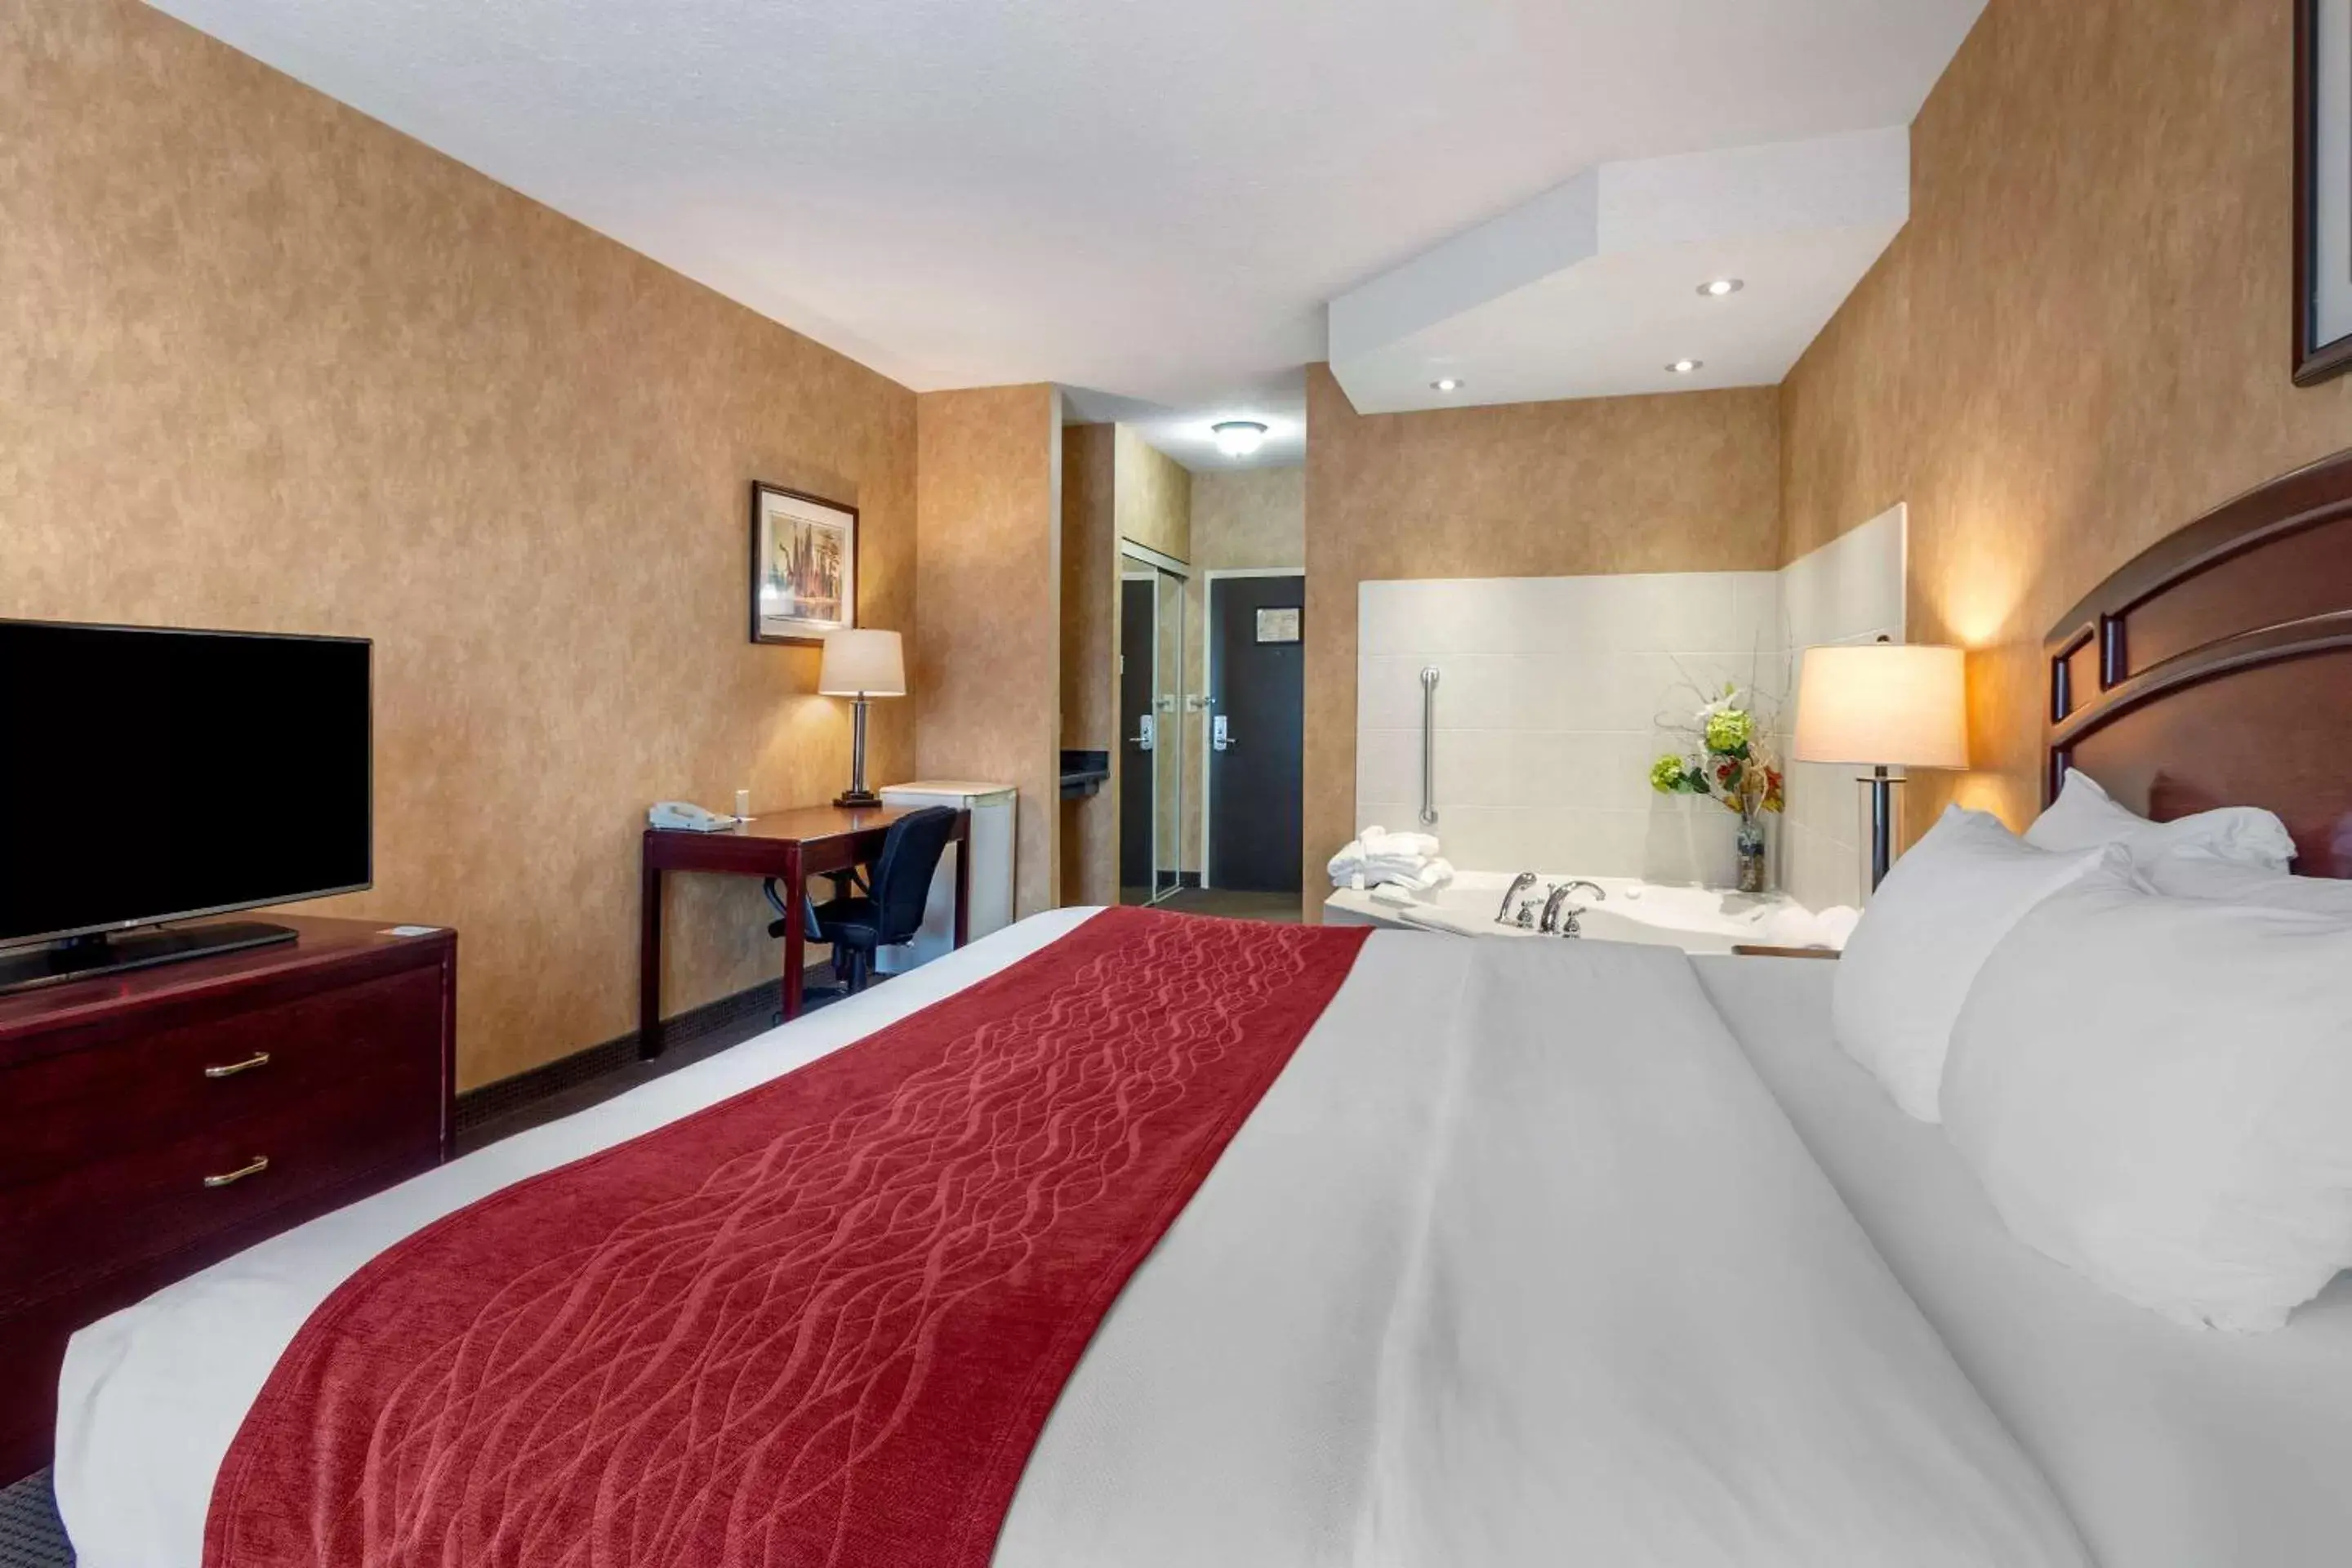 Bedroom, Bed in Comfort Inn Sturgeon Falls